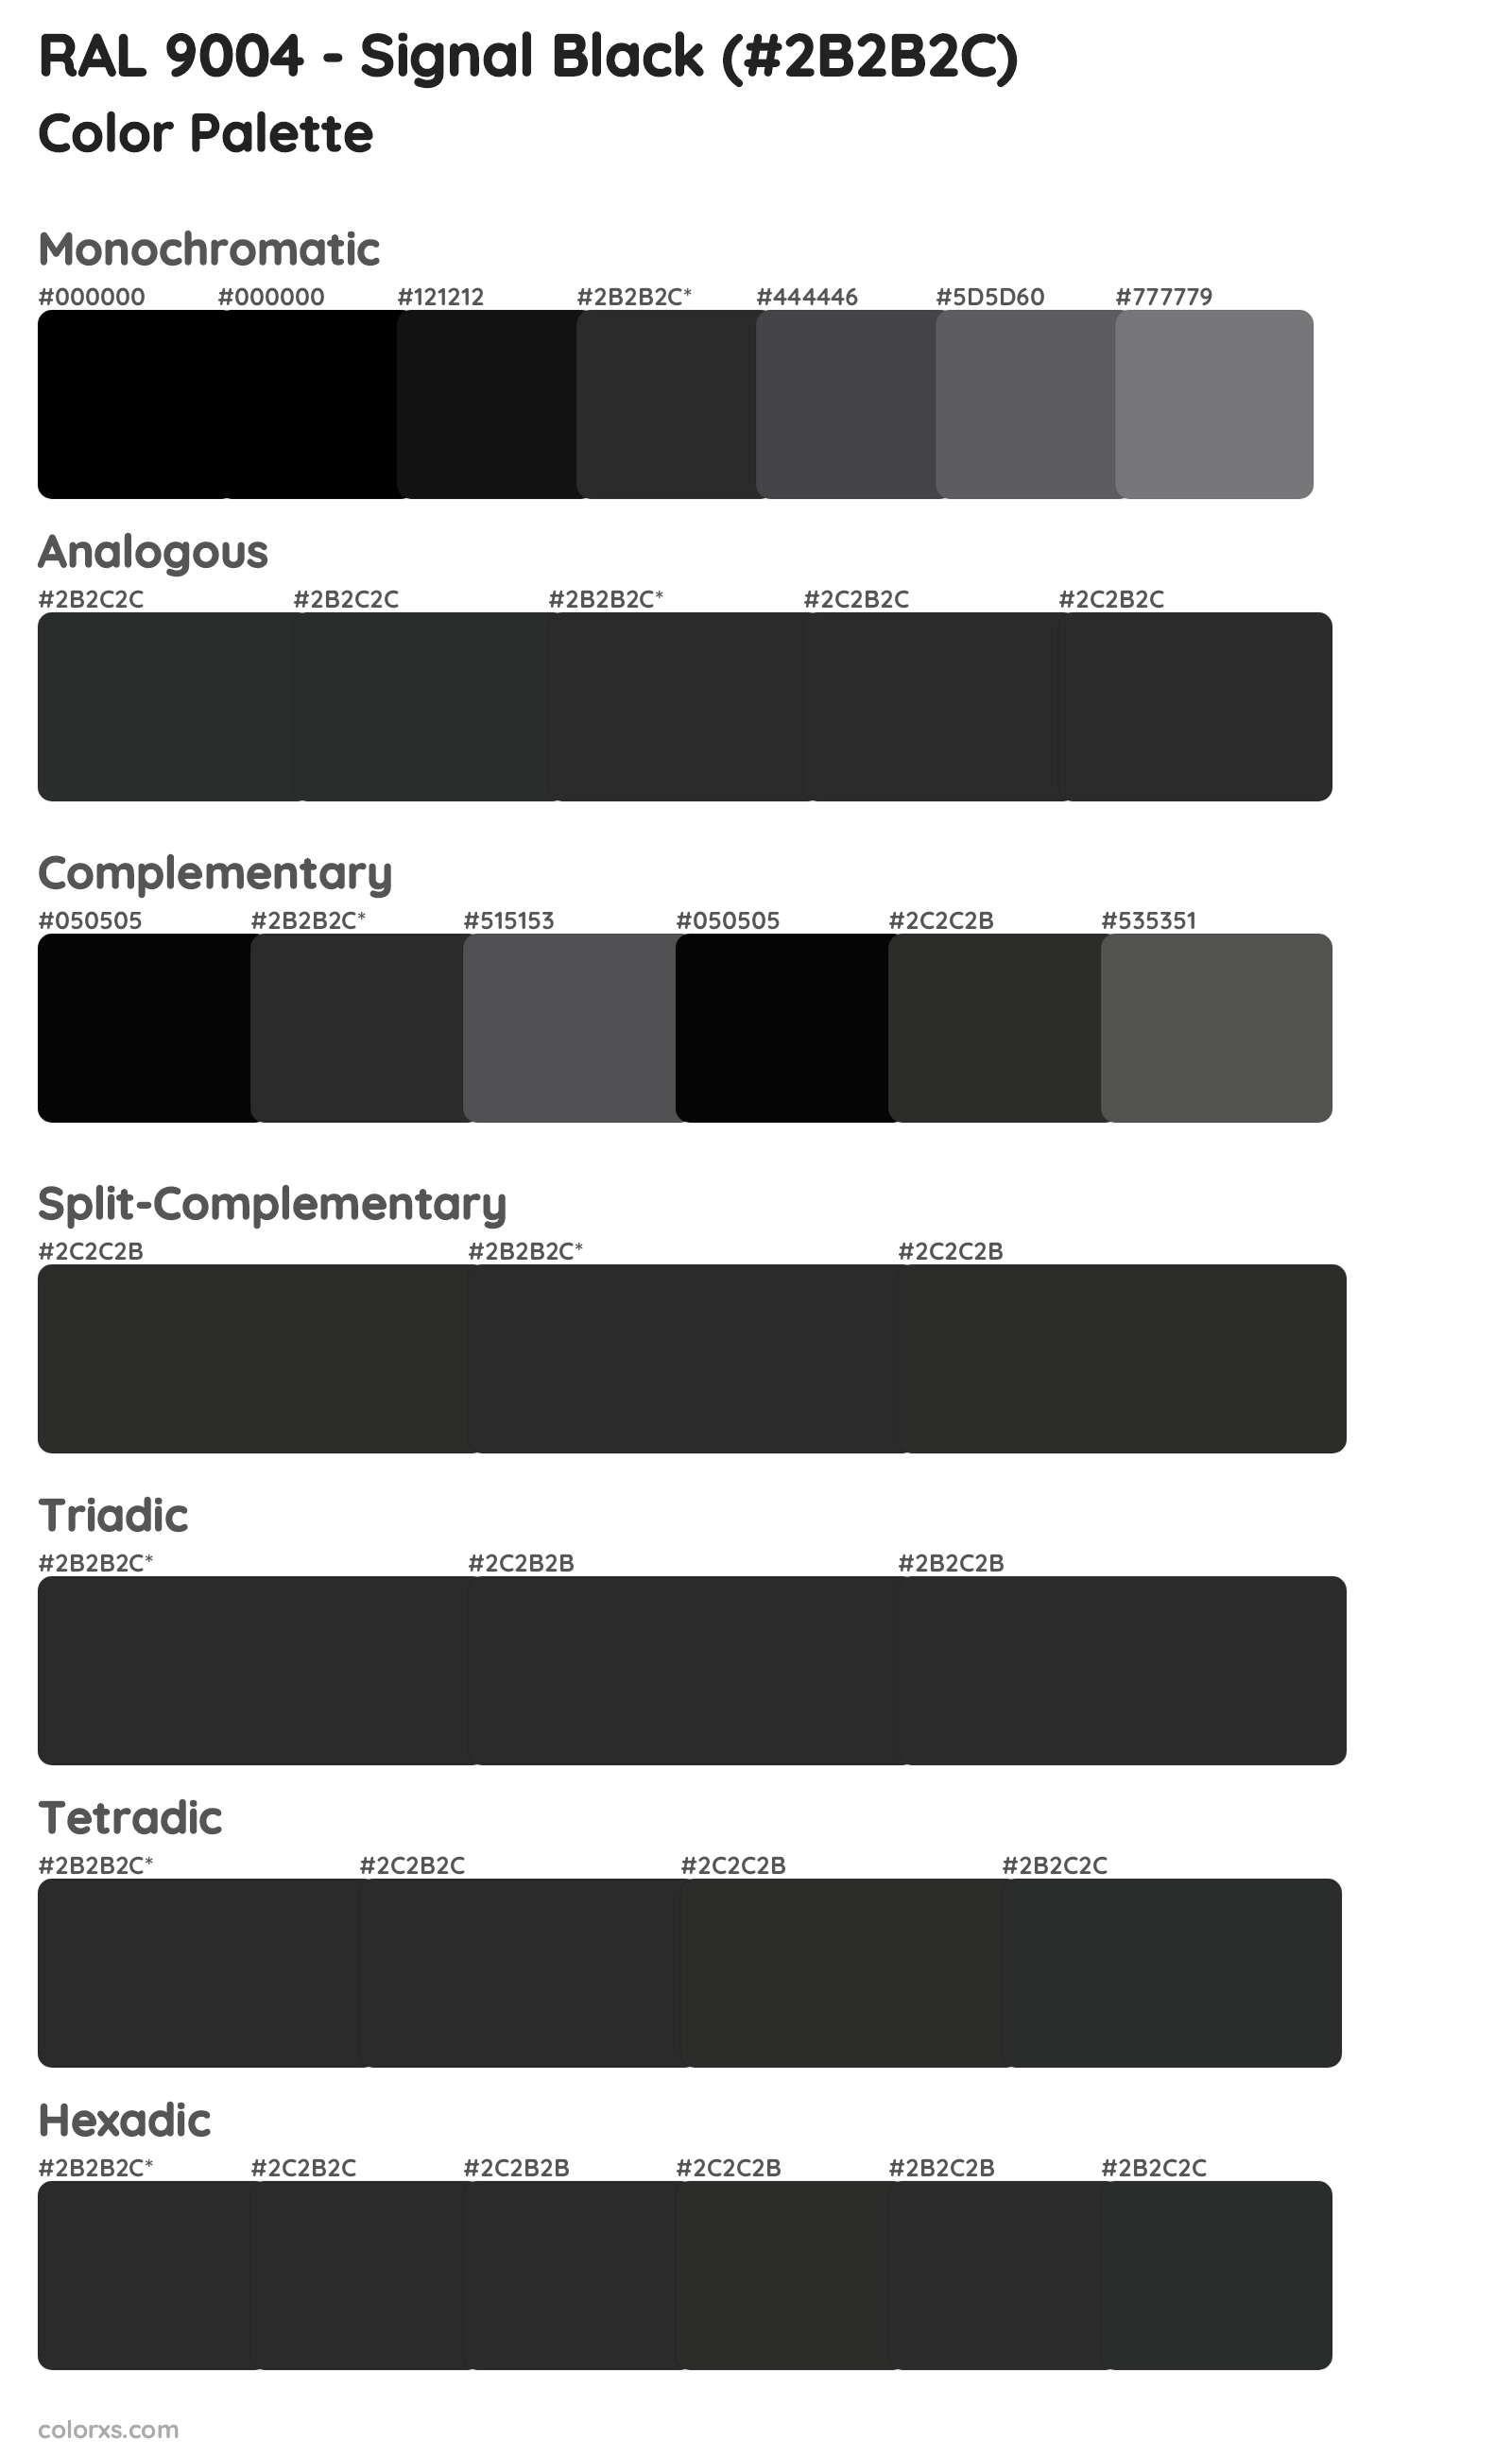 RAL 9004 - Signal Black Color Scheme Palettes